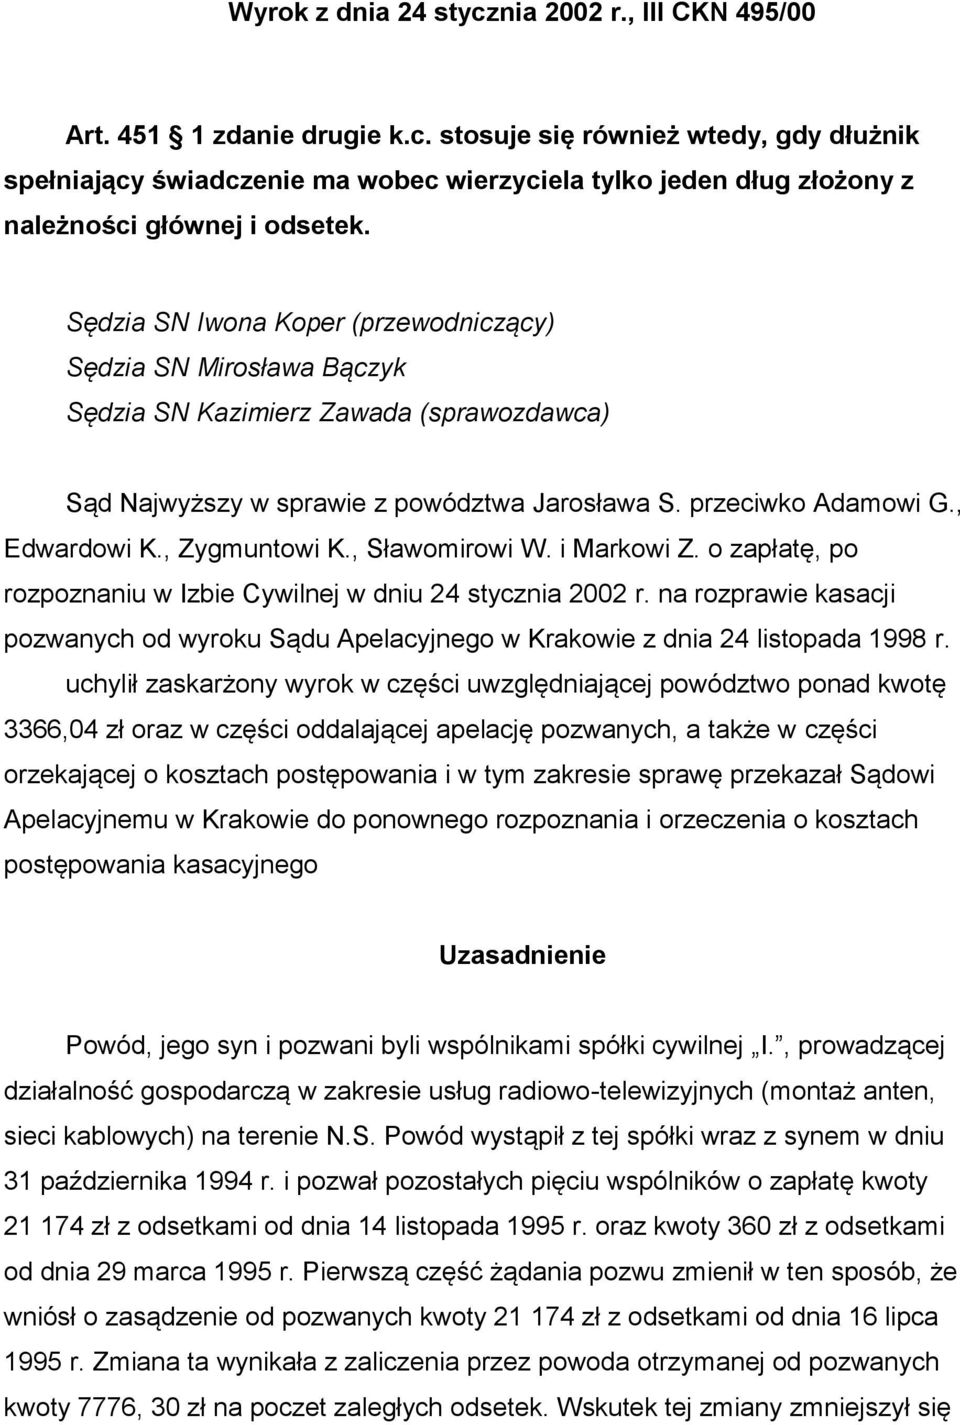 , Zygmuntowi K., Sławomirowi W. i Markowi Z. o zapłatę, po rozpoznaniu w Izbie Cywilnej w dniu 24 stycznia 2002 r.